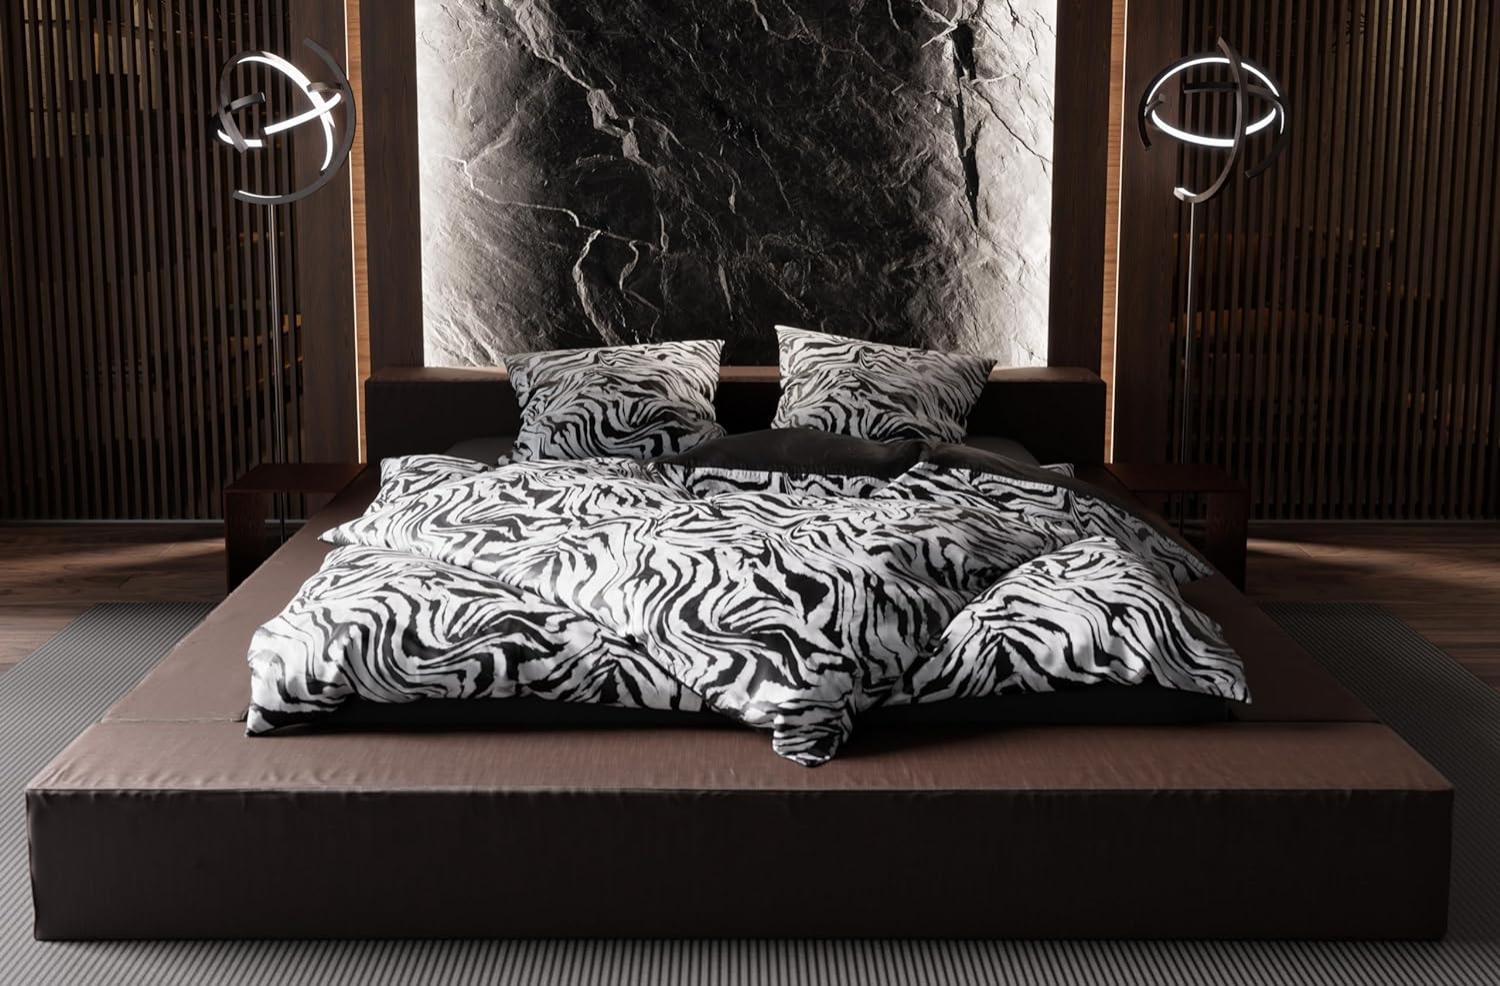 Moderne Mako Satin Wende Bettwäsche Zebra Muster schwarz weiß 135x200 + 80x80 Bild 1